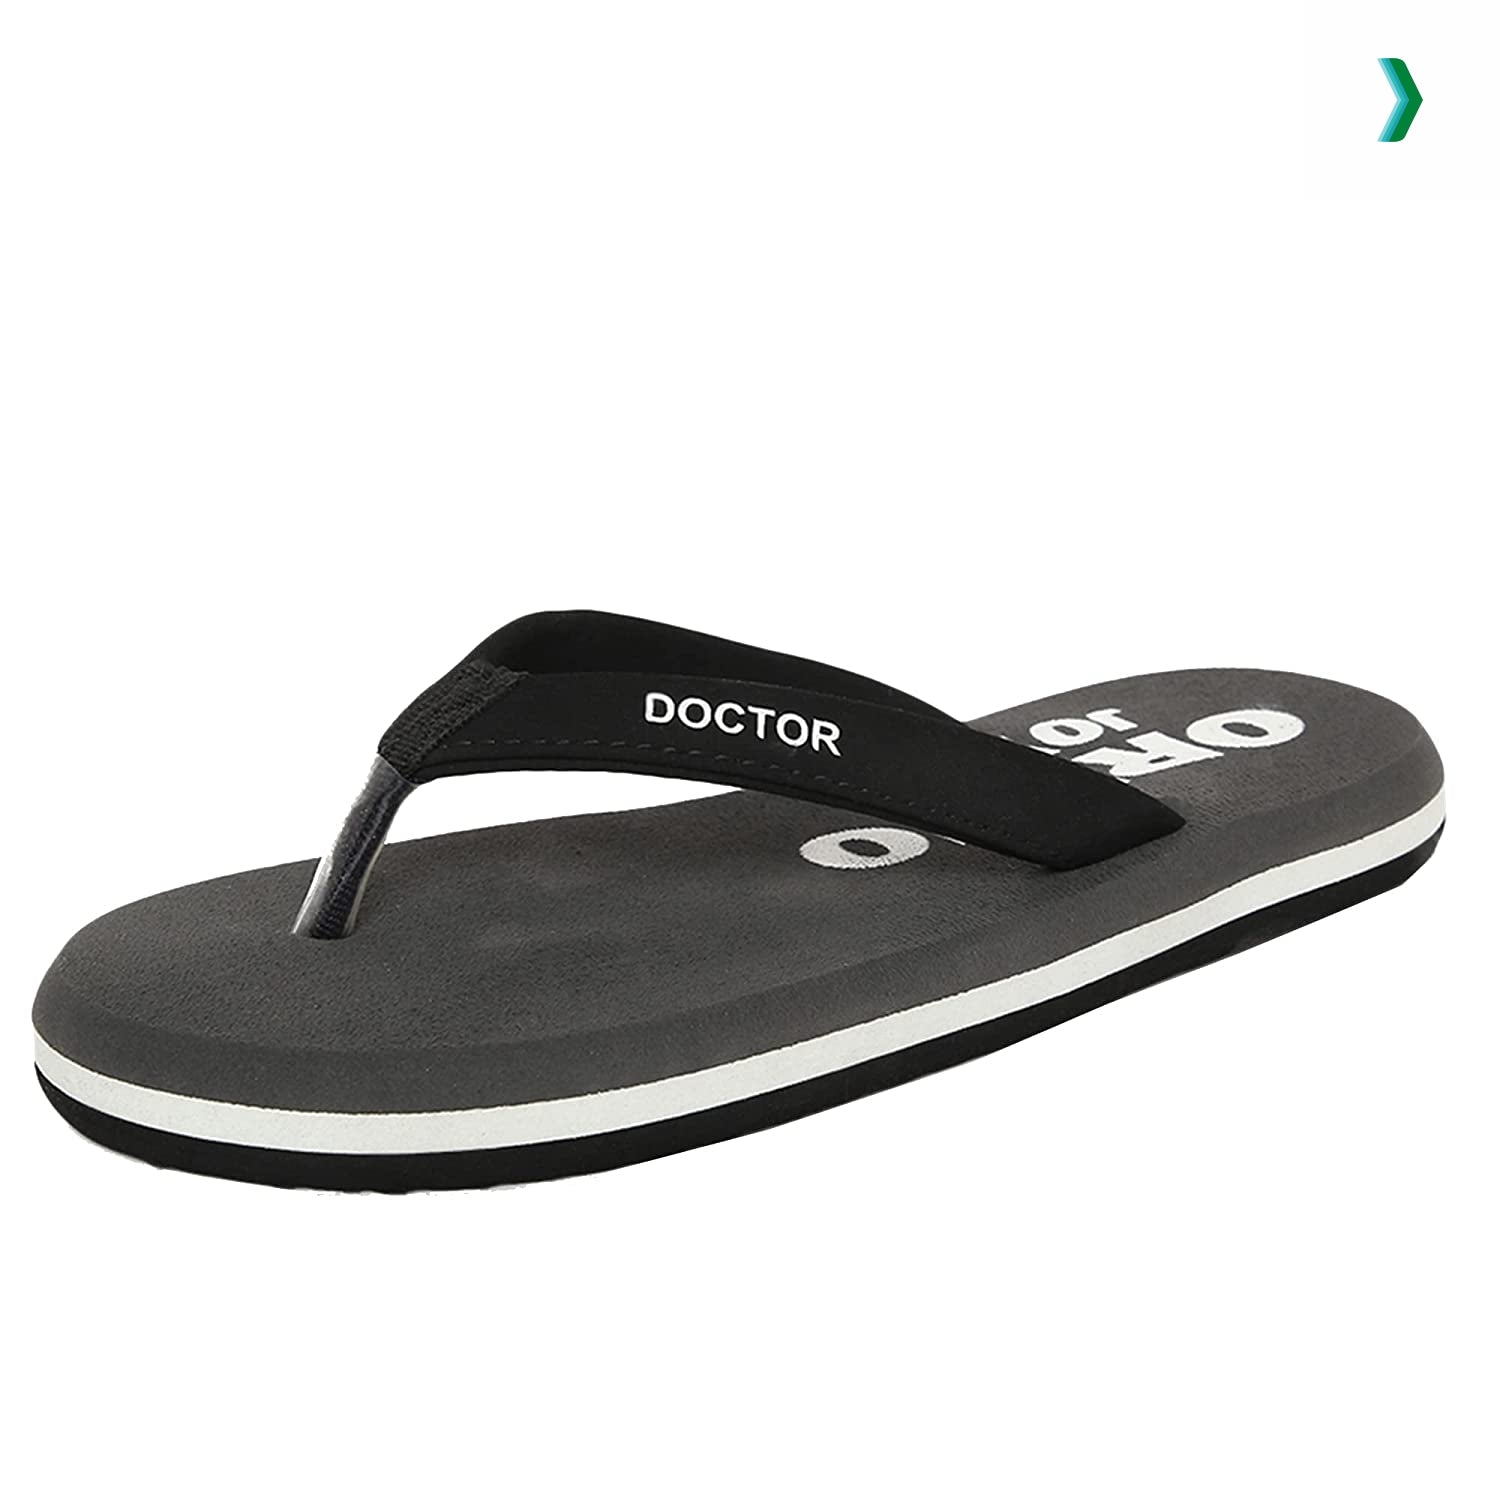 Buy soft slipper diabetic super fit comfort doctor slipper